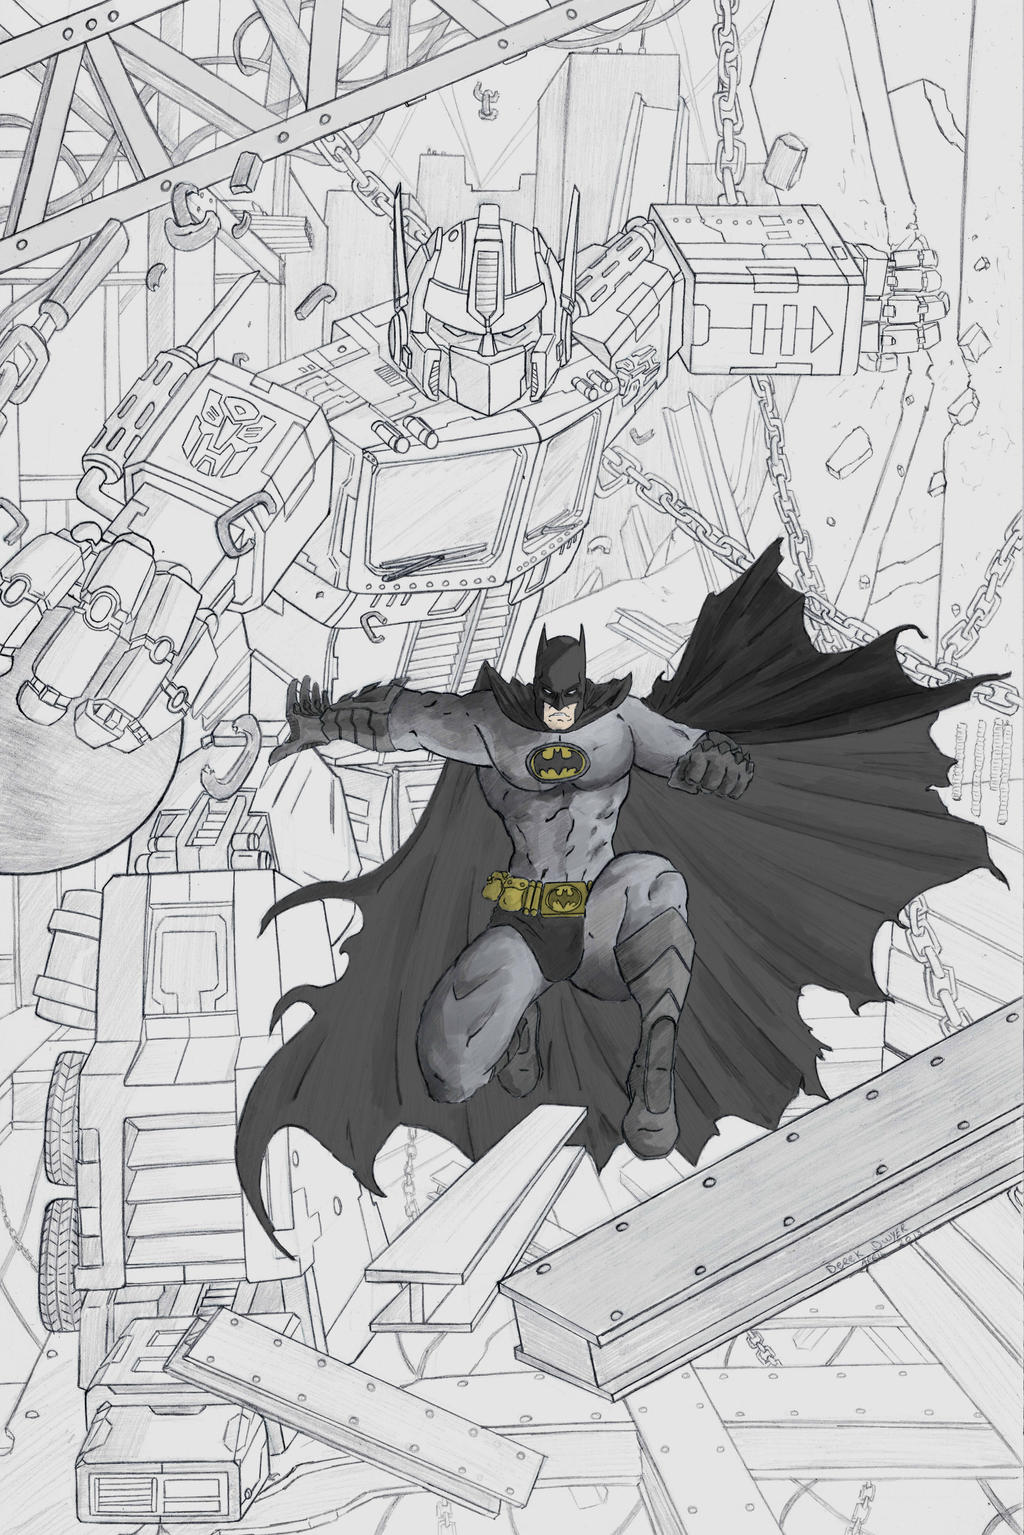 Batman Optimus Prime colour work in progress by DerekDwyer on DeviantArt